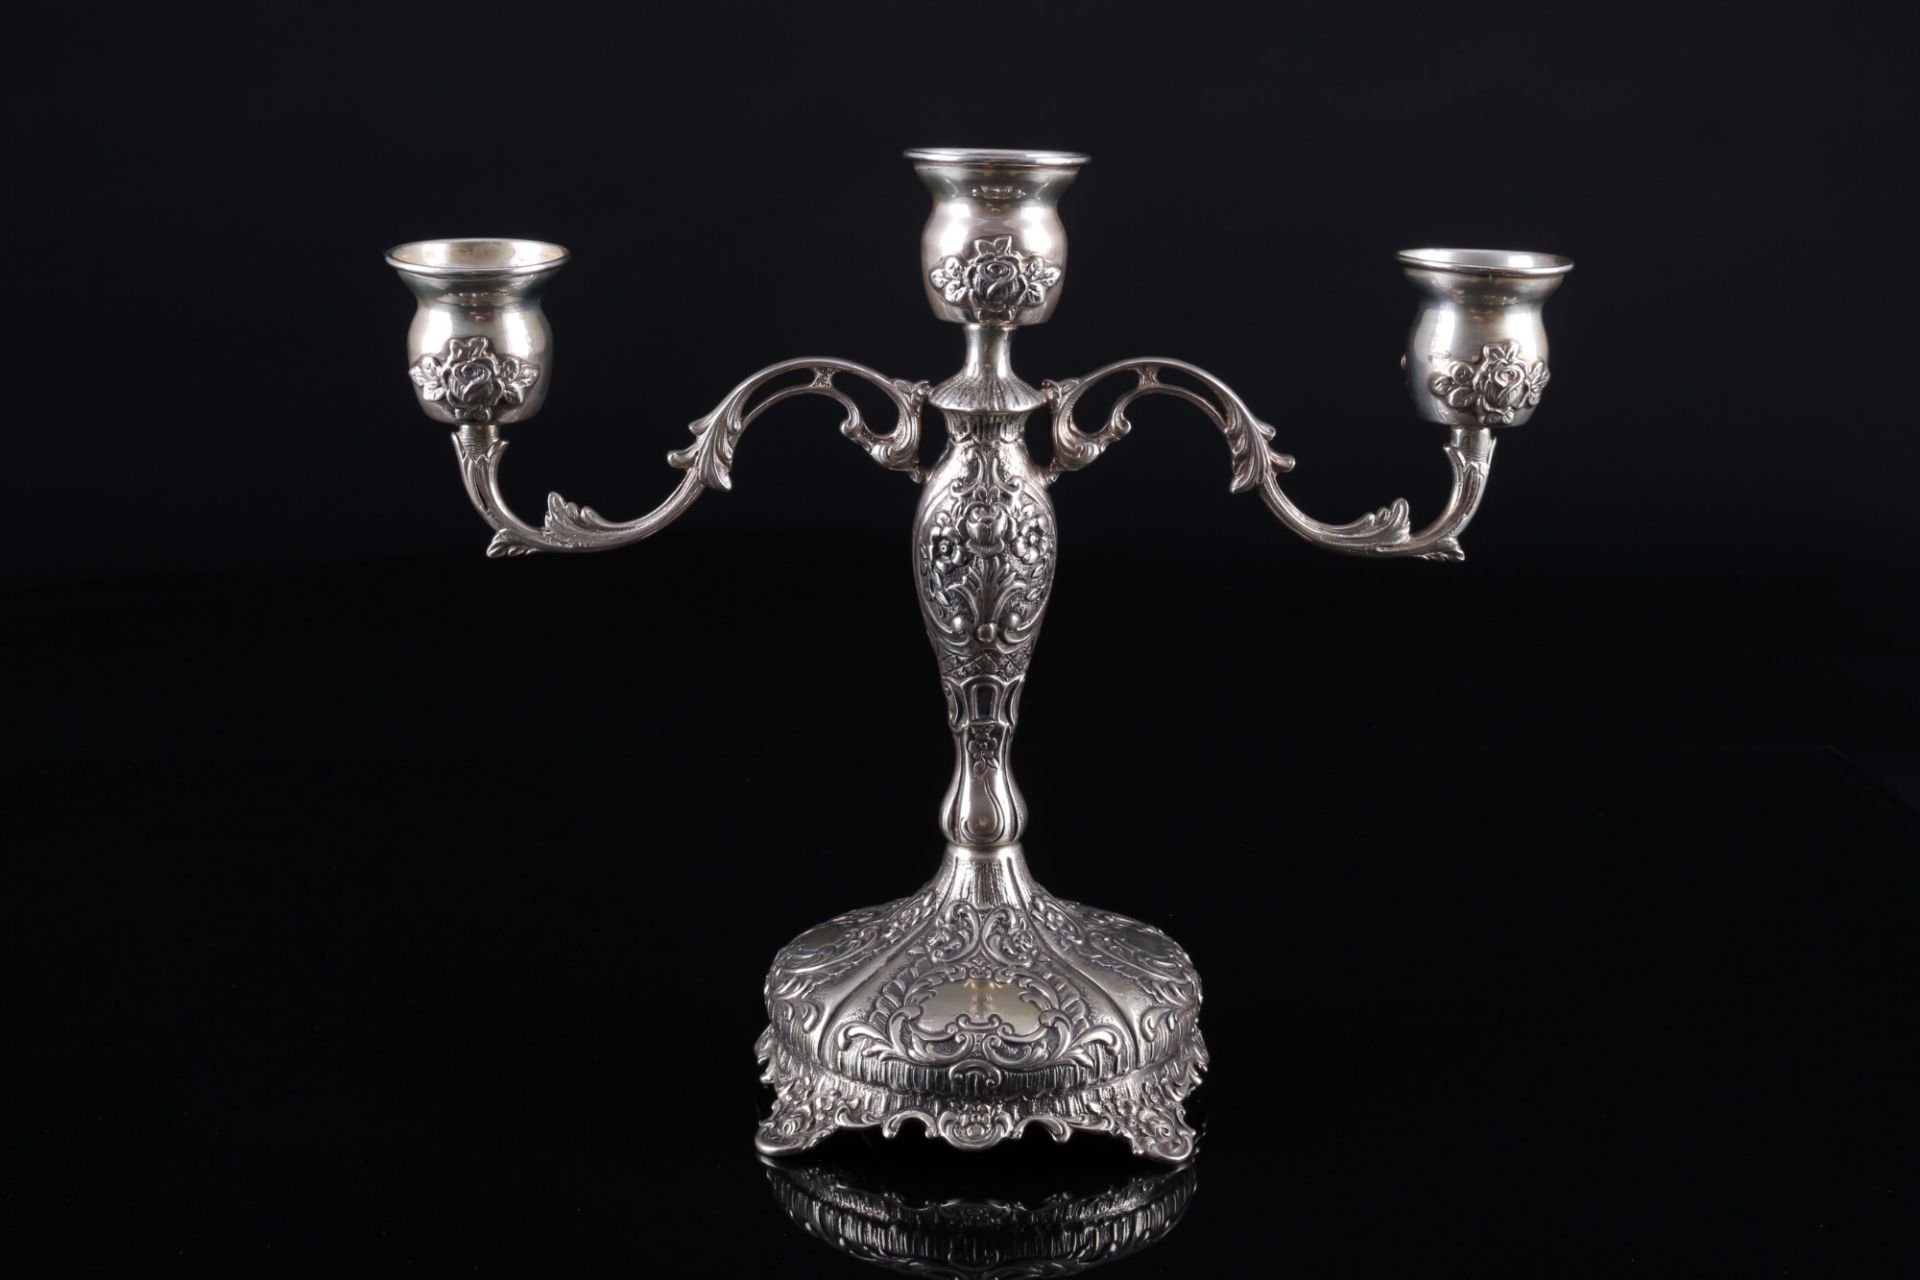 800 Silber 2 Kerzenständer mit Rosendekor, 3-flammig, silver candelabras, - Bild 3 aus 6